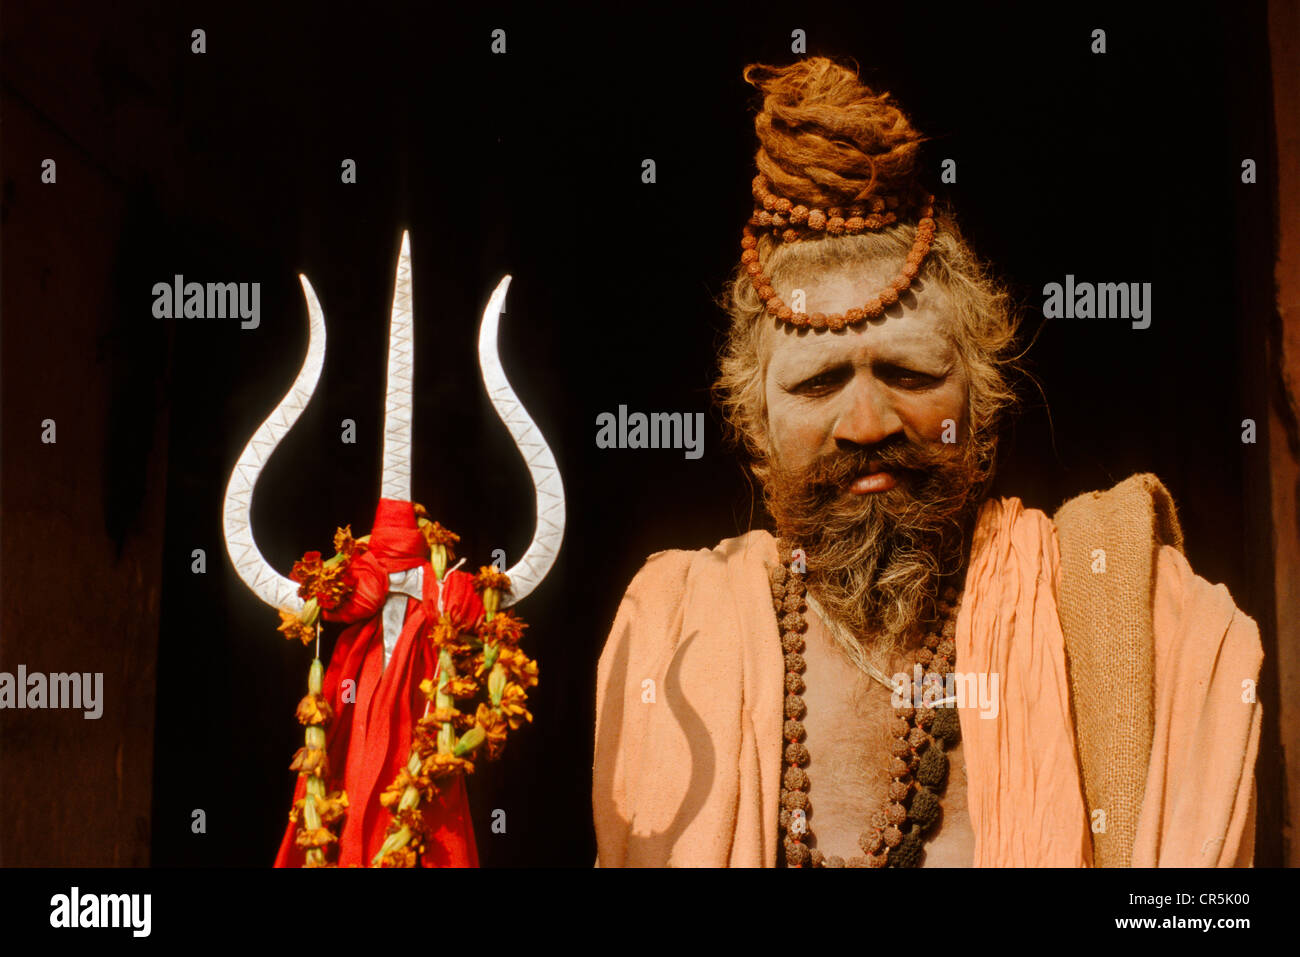 Shiva Sadhu mit Trishul, das Symbol der Dreieinigkeit von Brahma, Vishnu und Shiva, Varanasi, Uttar Pradesh, Indien, Asien Stockfoto